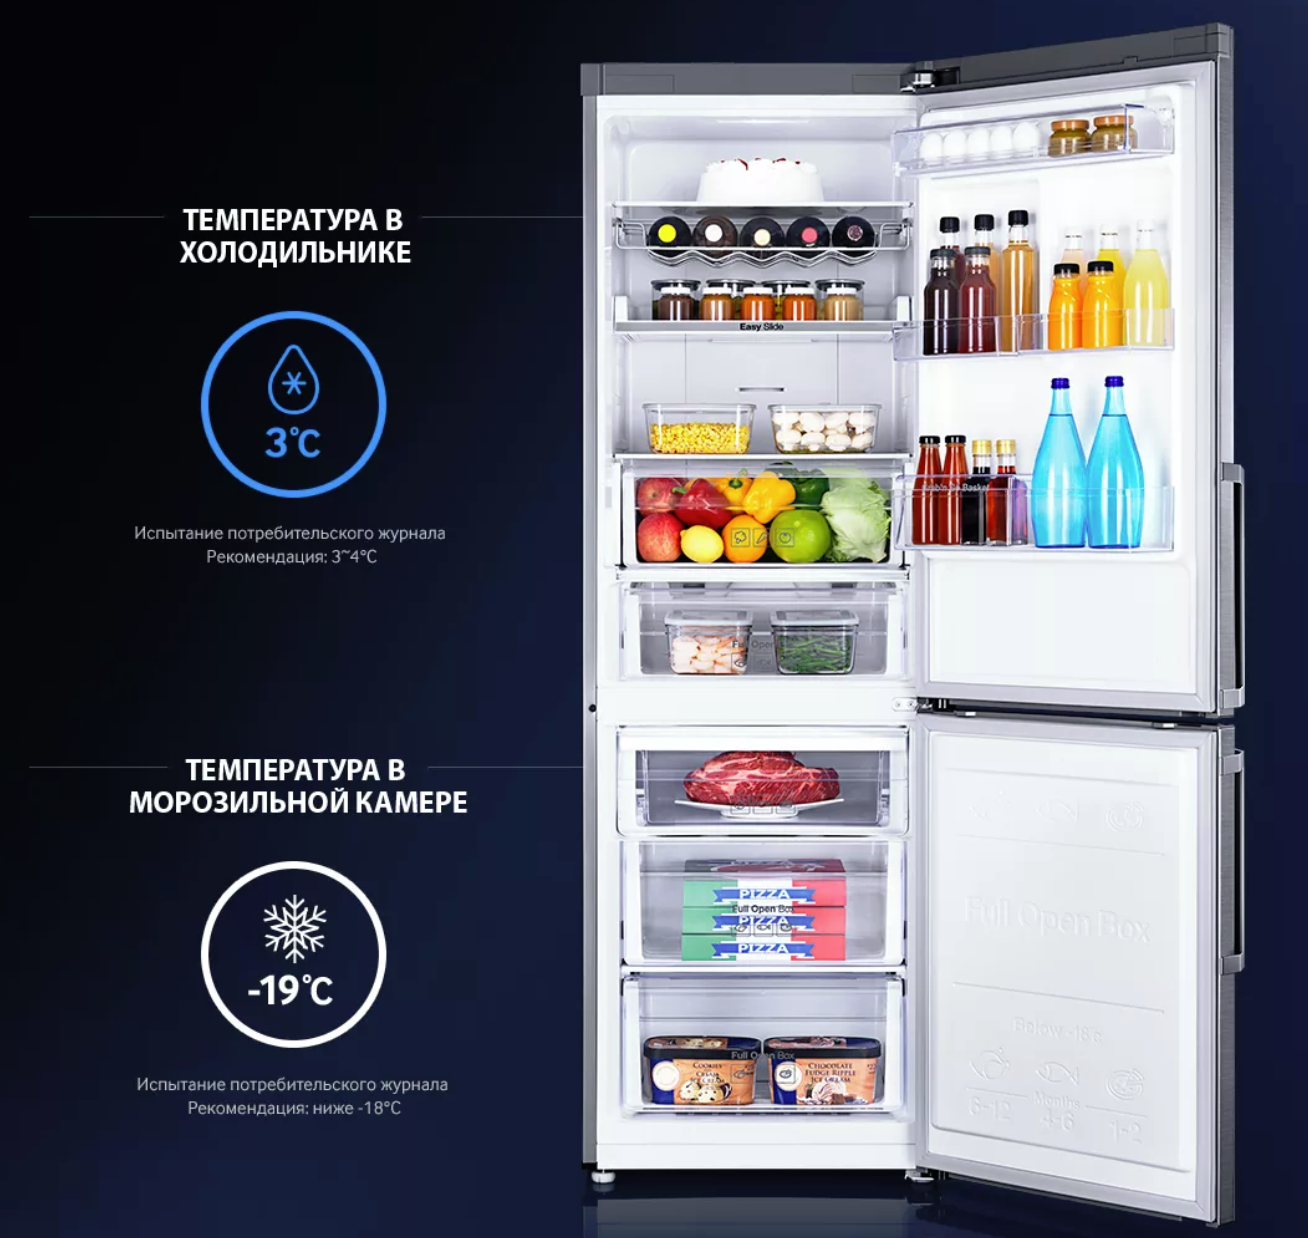 Холодильник долго. Холодильник самсунг двухкамерный градусы. Оптимальная температура в холодильнике самсунг. Температура в холодоль. Ьемпертврца в холодильнике.